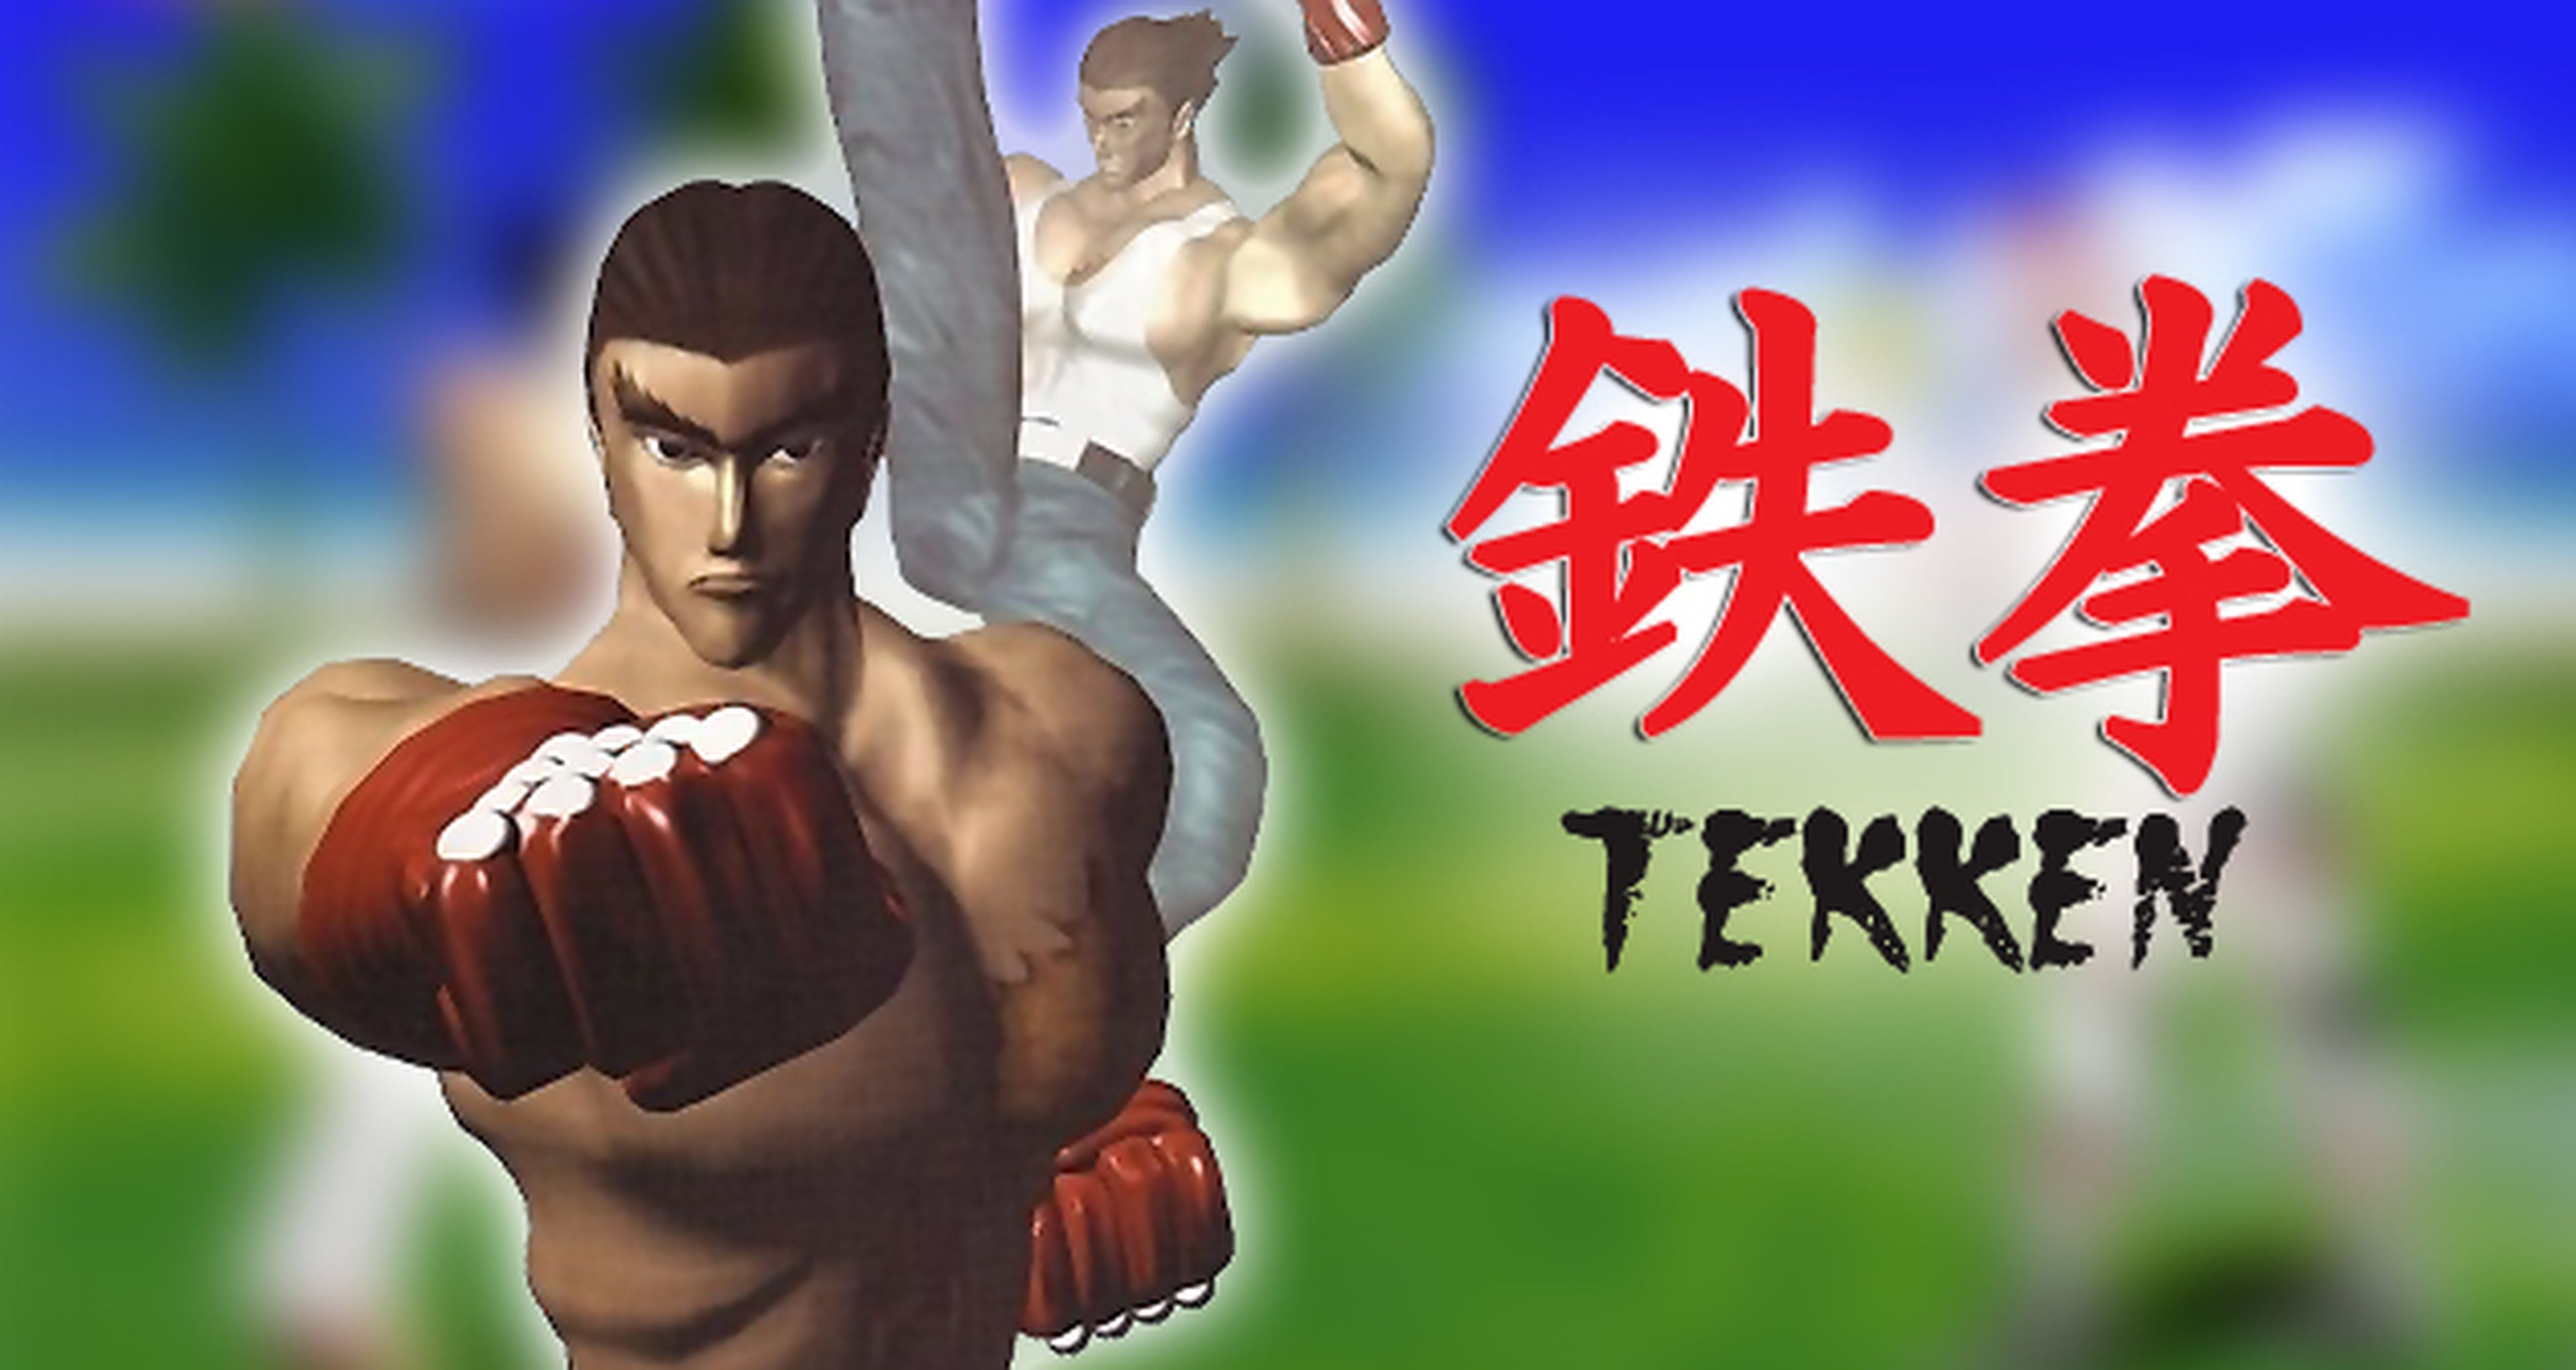 Hobby Consolas, hace 20 años: Análisis de Tekken